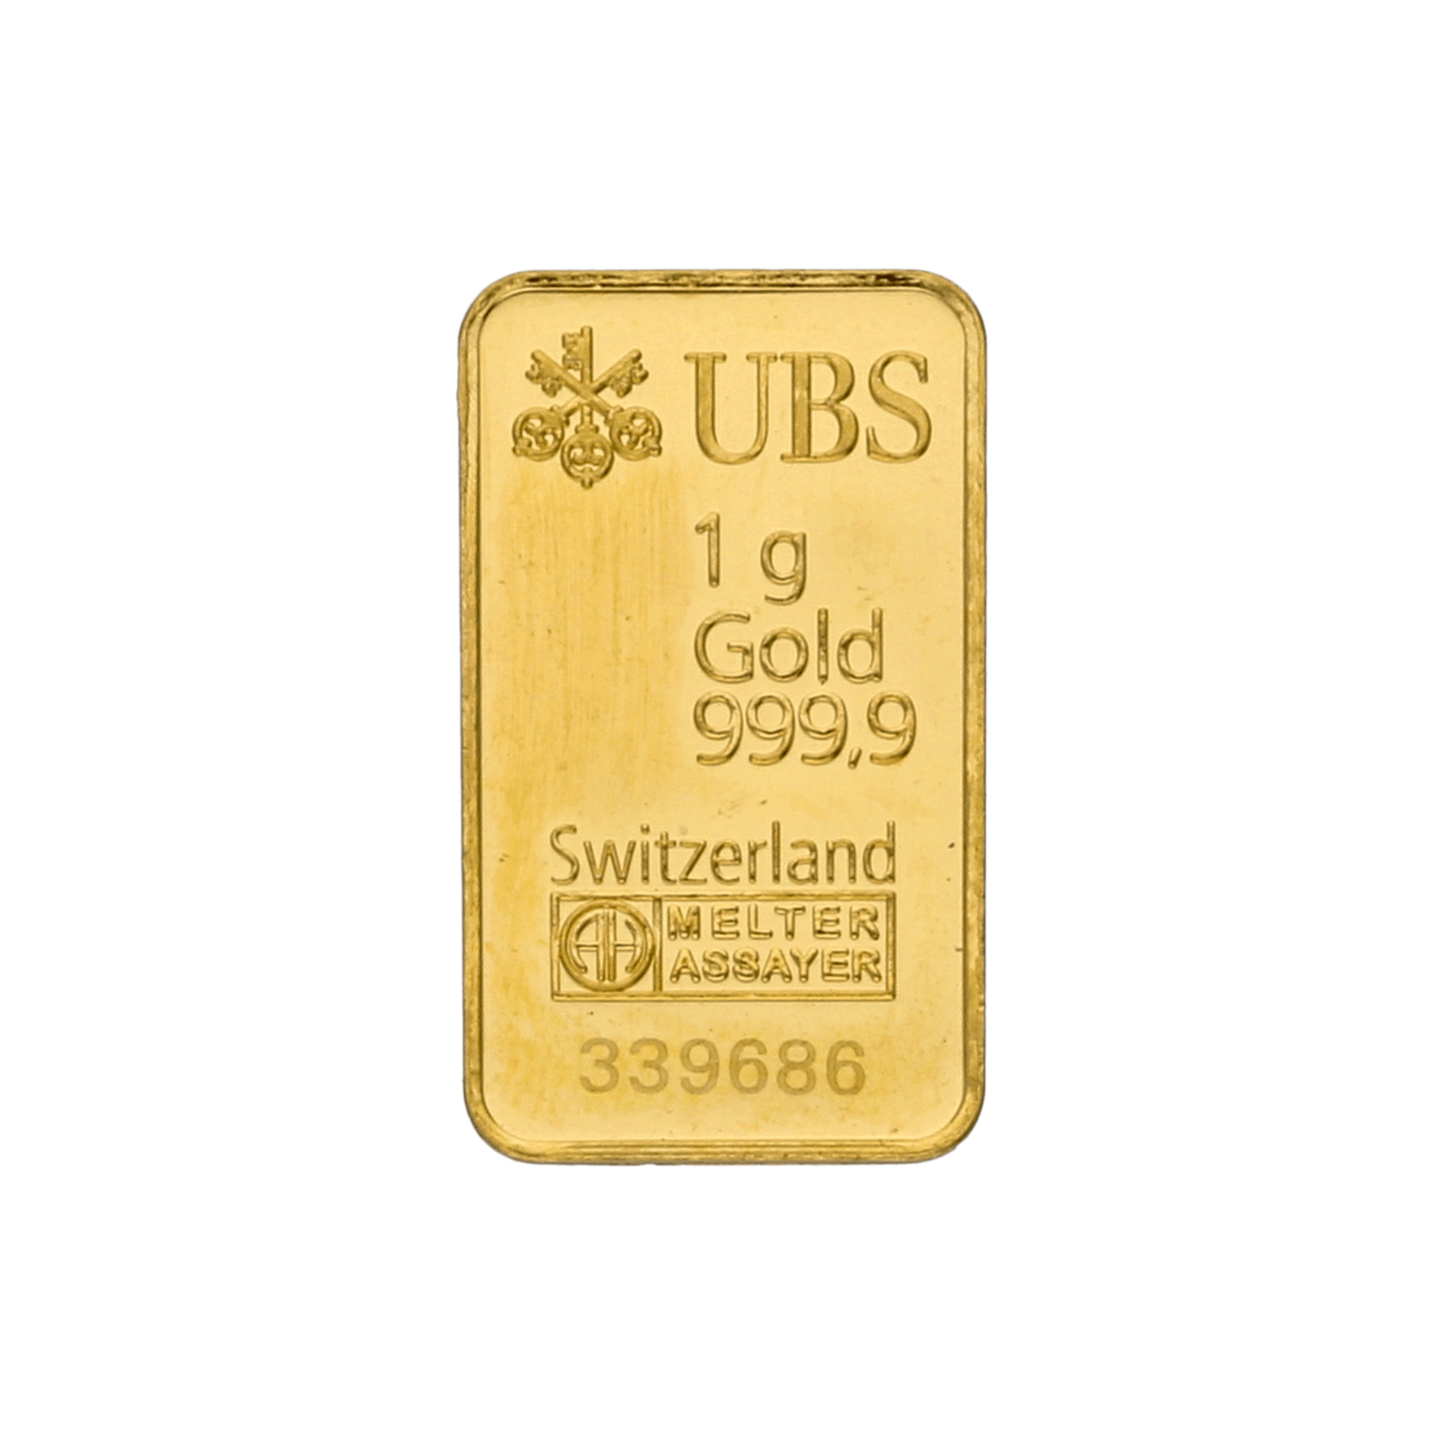 1 Gram Goudbaar | 24k fijn goud | Zwitsers vakmanschap | Bullion van beleggingskwaliteit | Verzamelbaar kostbaar goud | Valcambi